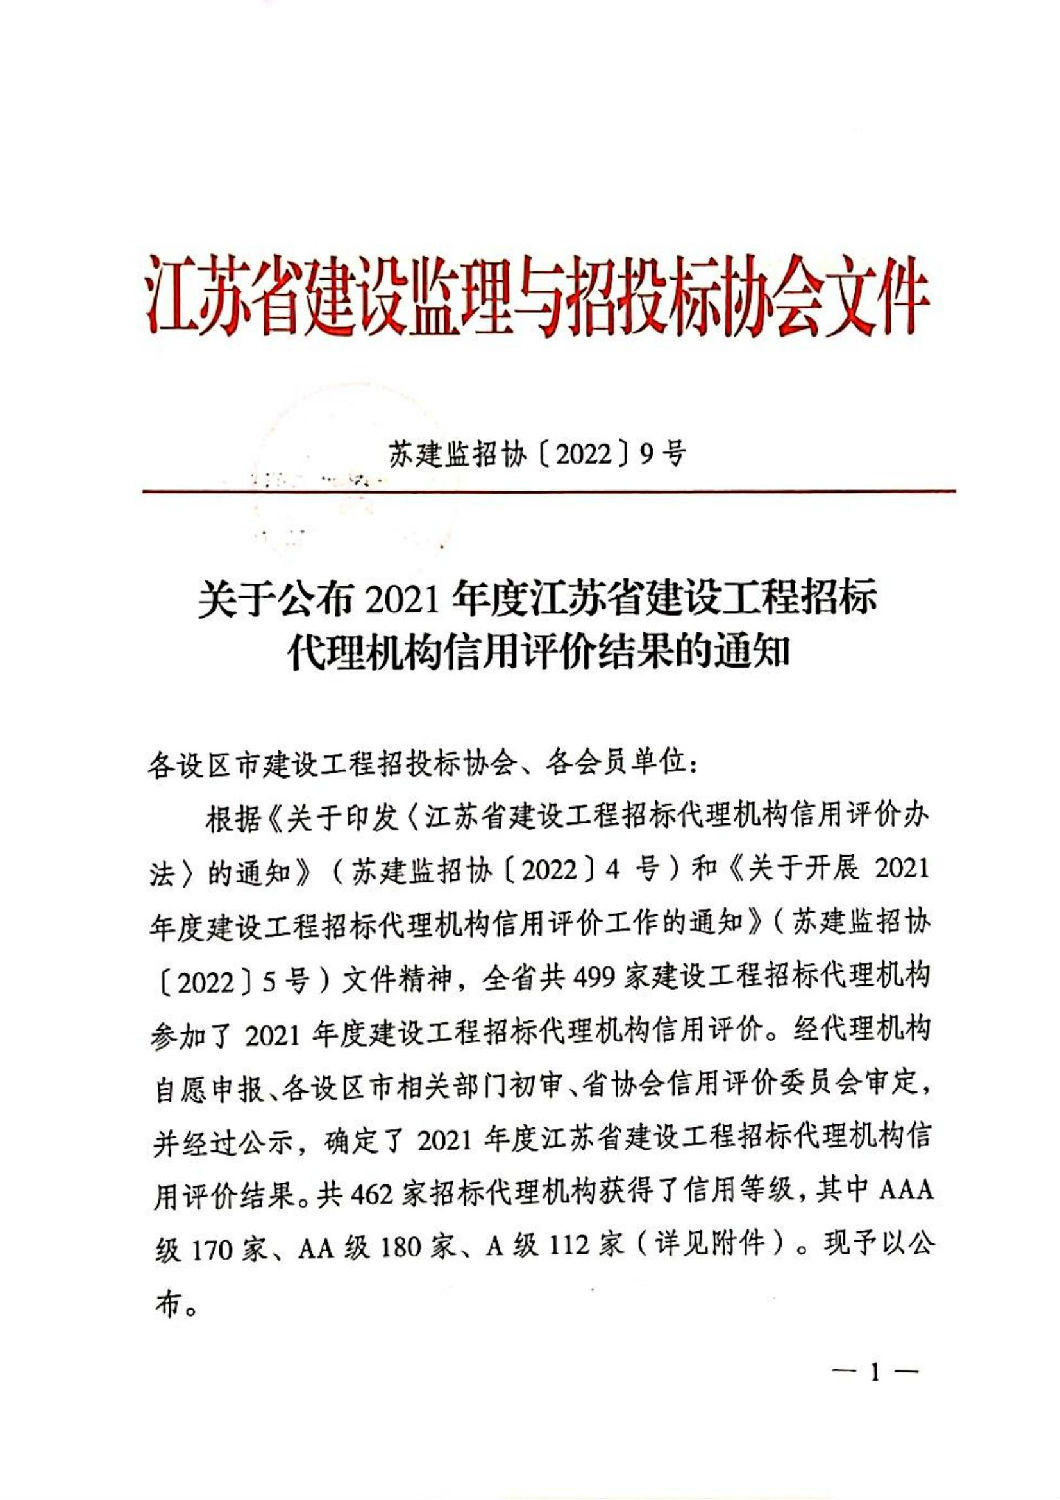 关于公布2021年度江苏省建设工程招标代理机构信用评价结果的通知_00.jpg